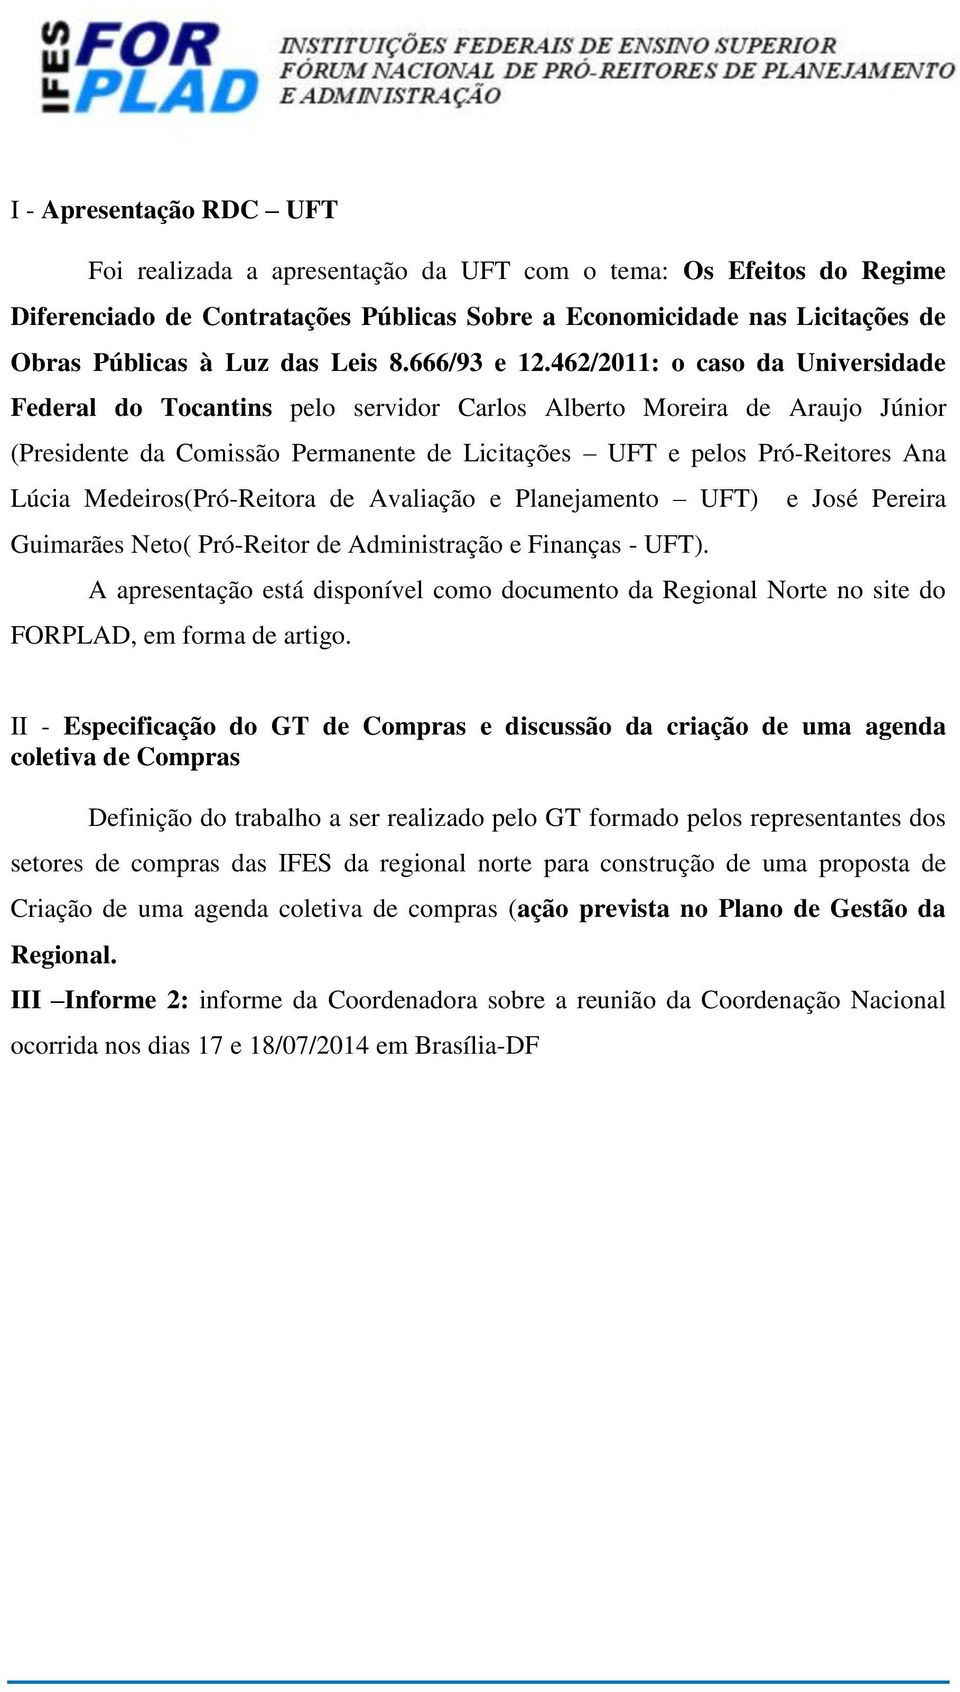 462/2011: o caso da Universidade Federal do Tocantins pelo servidor Carlos Alberto Moreira de Araujo Júnior (Presidente da Comissão Permanente de Licitações UFT e pelos Pró-Reitores Ana Lúcia